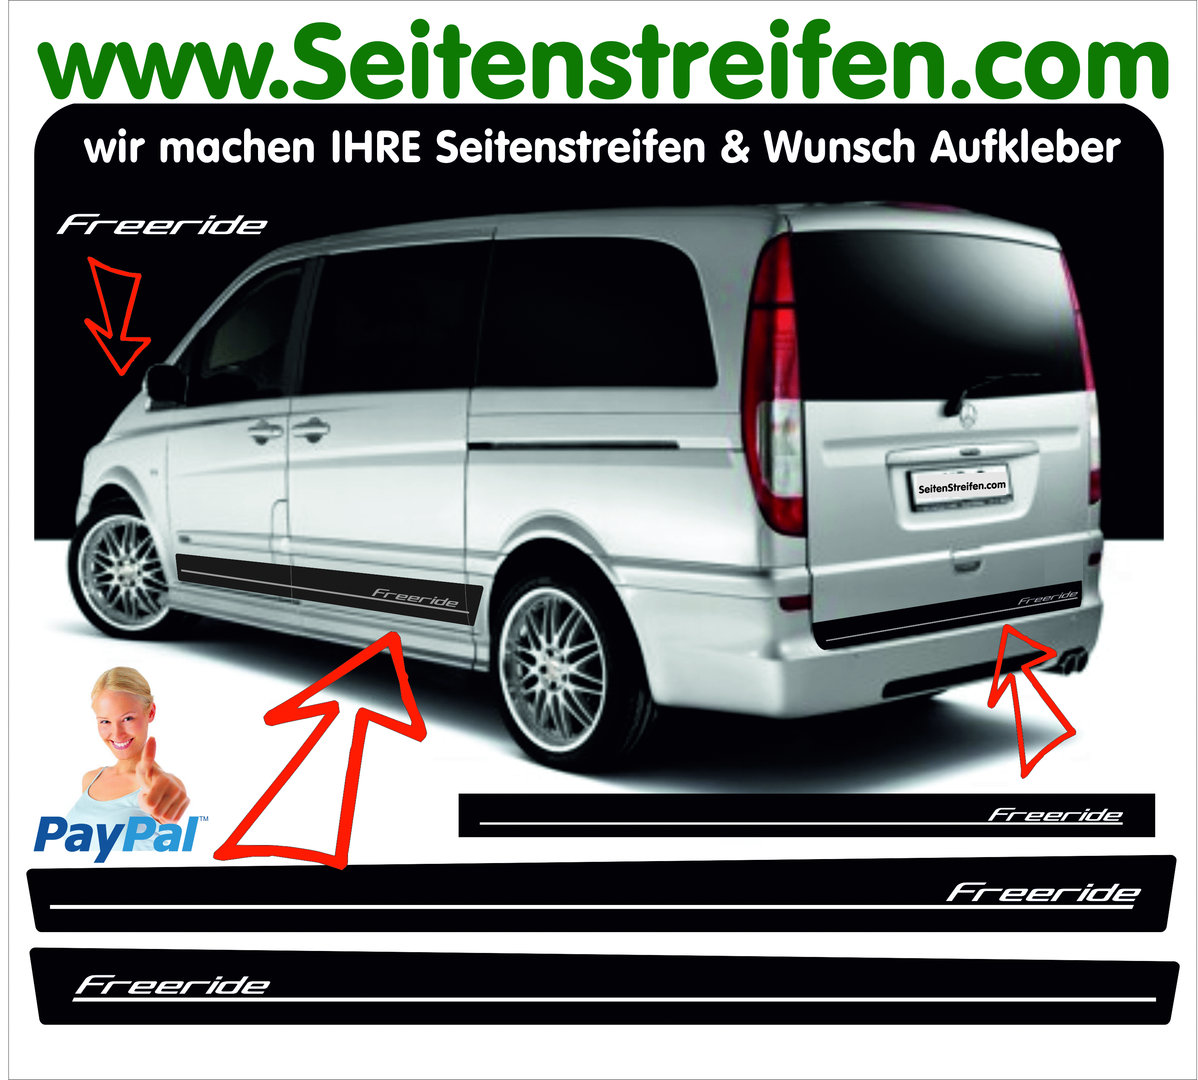 Mercedes Benz Vito & Viano - Freeride adesivi laterali adesive auto sticker - 1677